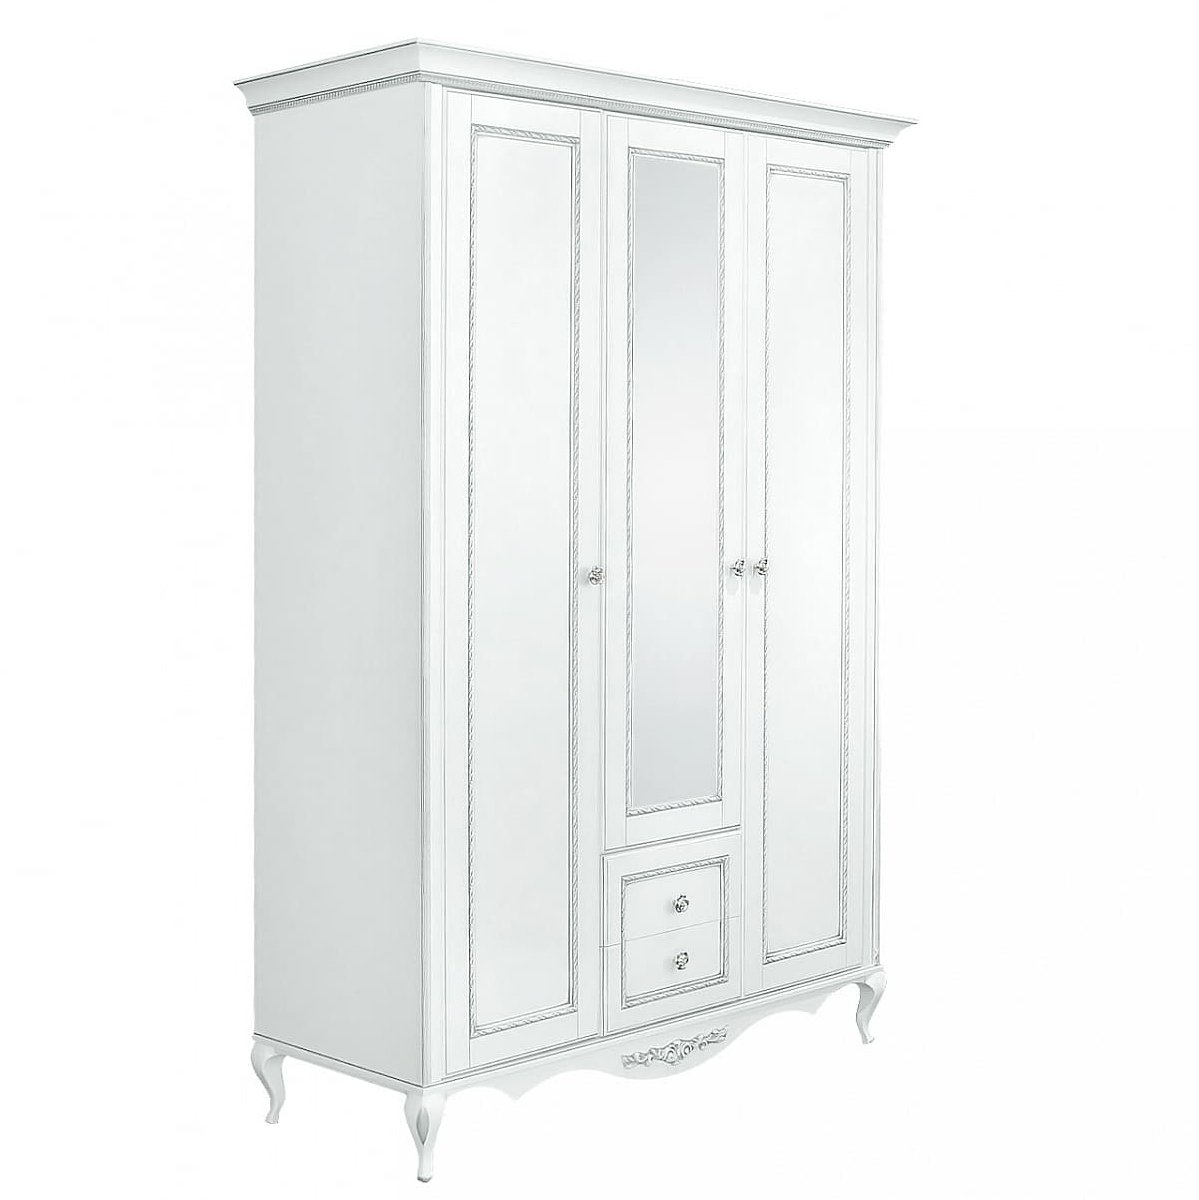 Шкаф платяной Timber Неаполь, 3-х дверный с зеркалом 159x65x227 см цвет: белый с серебром (T-523)T-523